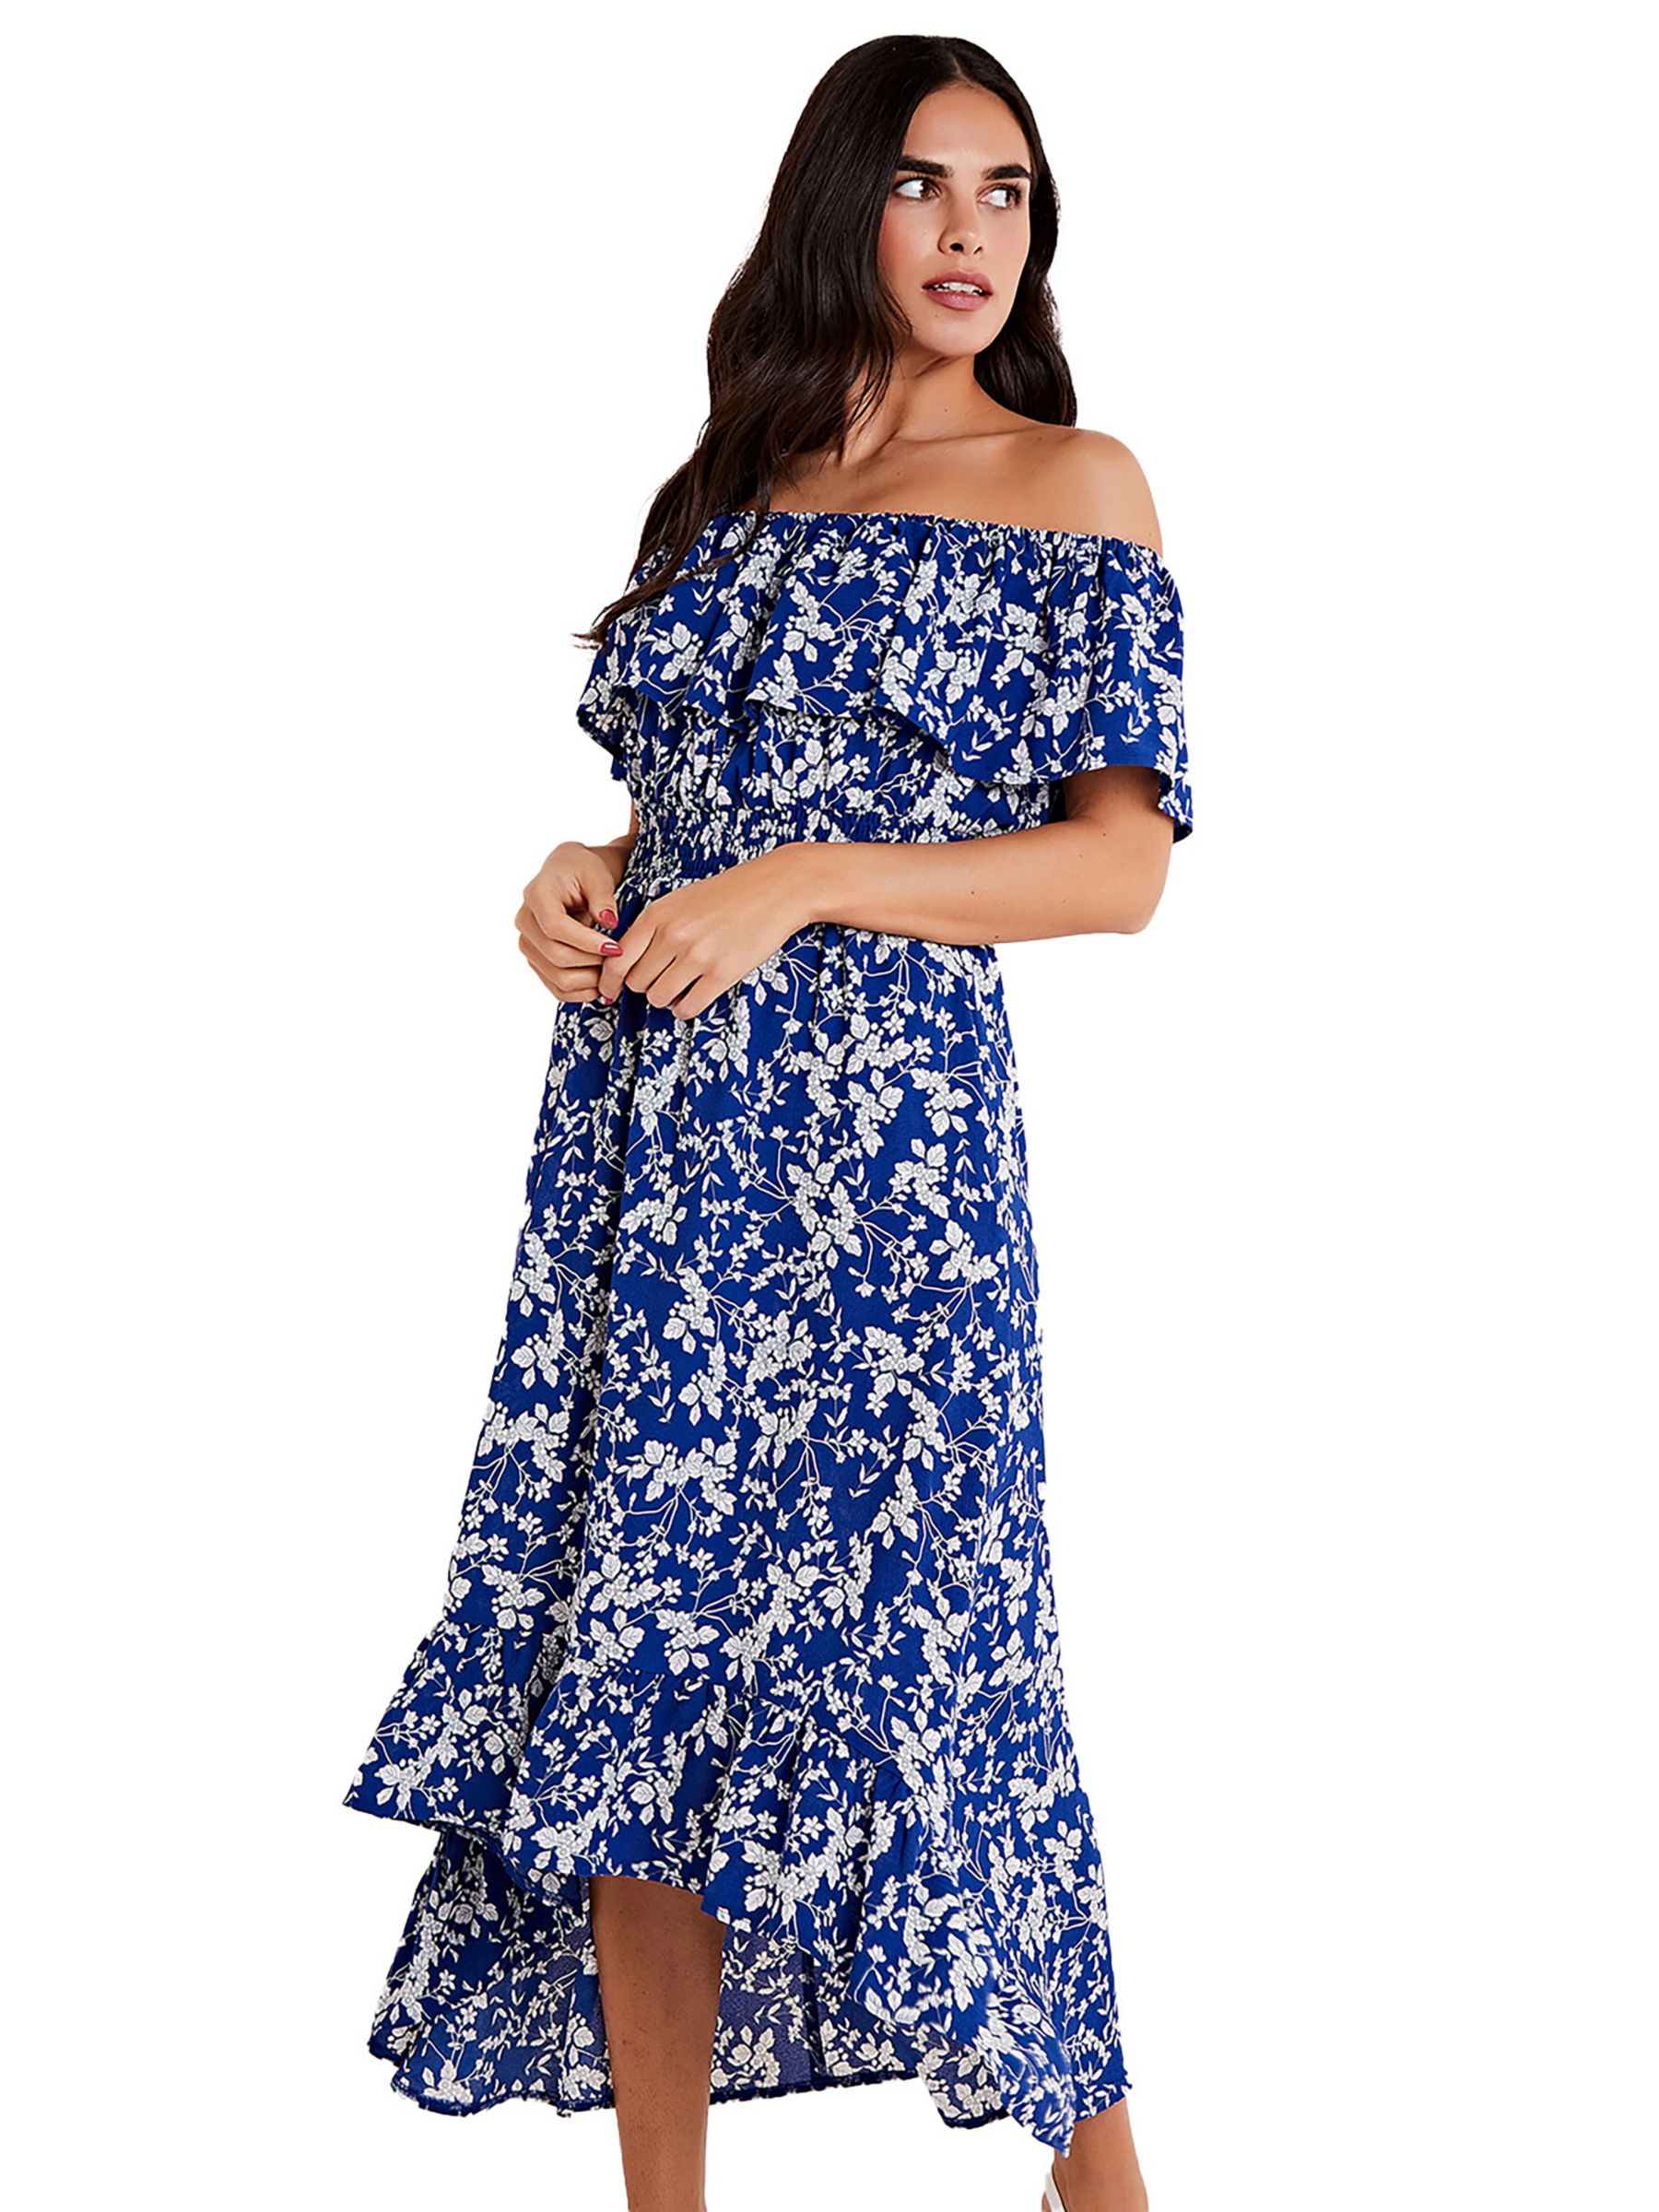 Mela London Ditsy Print Bardot Dipped Hem Dress, Blue, 18